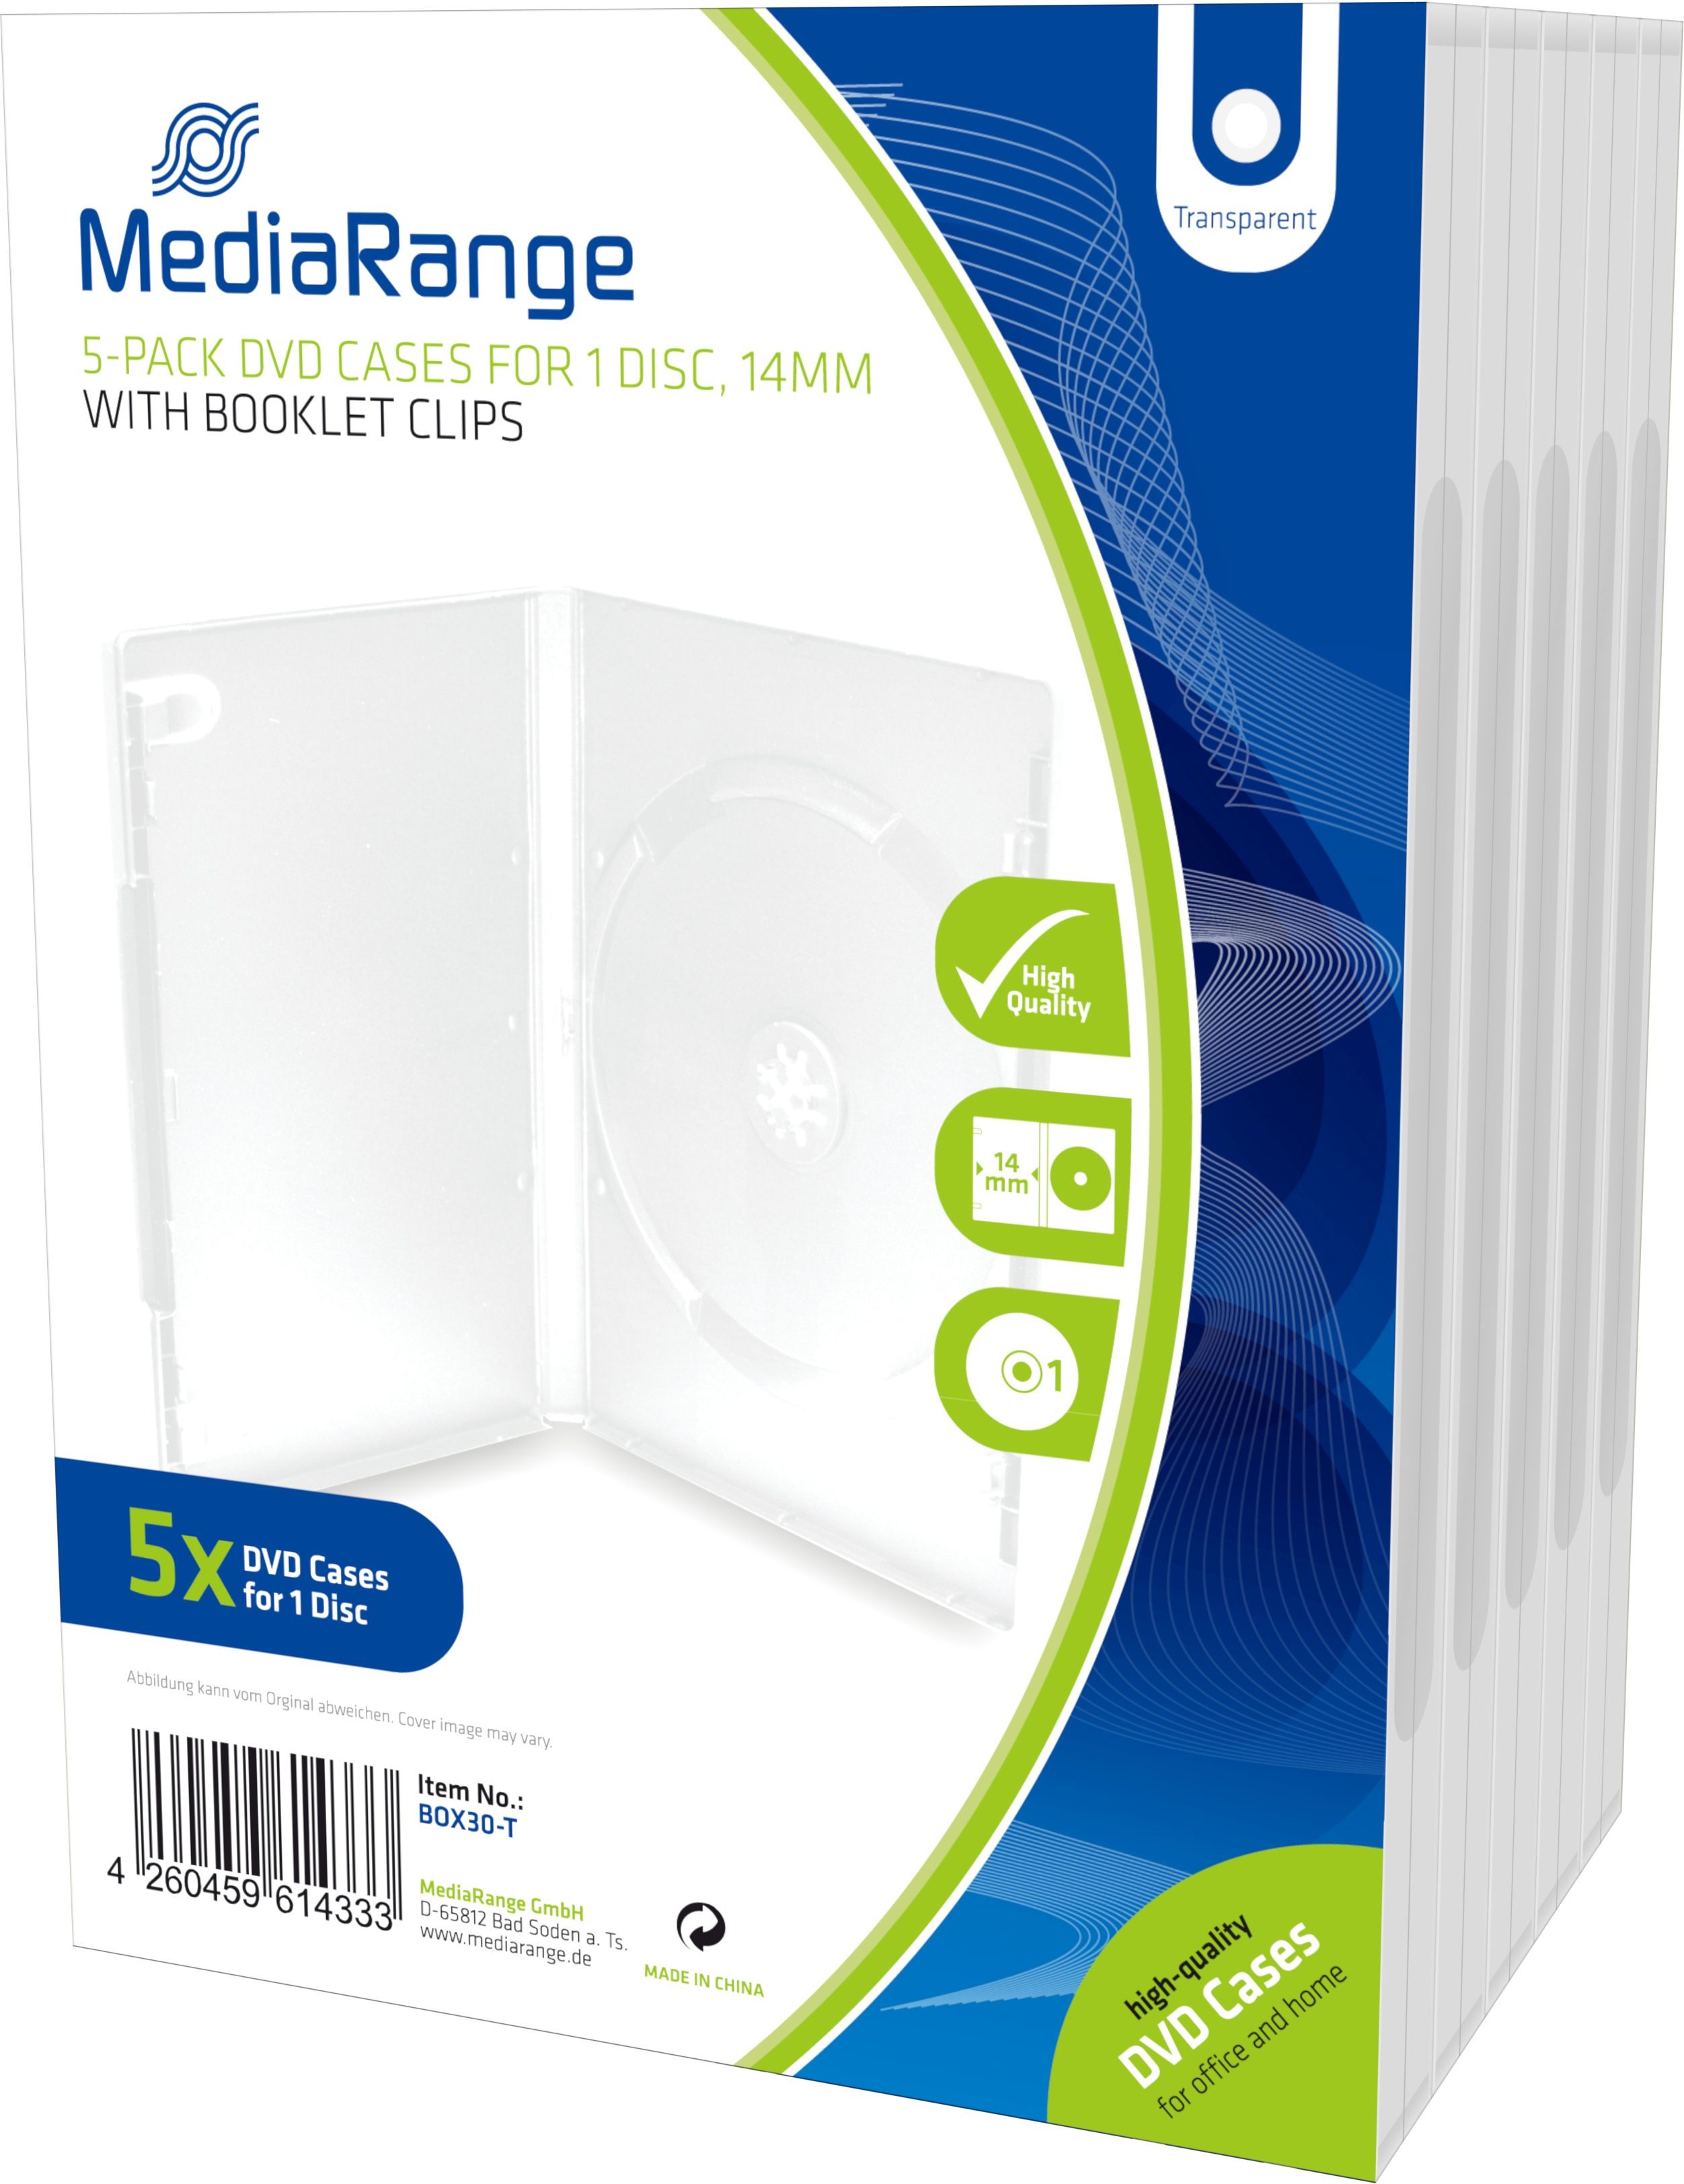 MEDIARANG DVD Hüllen, transp, 5er Pack BOX30-T